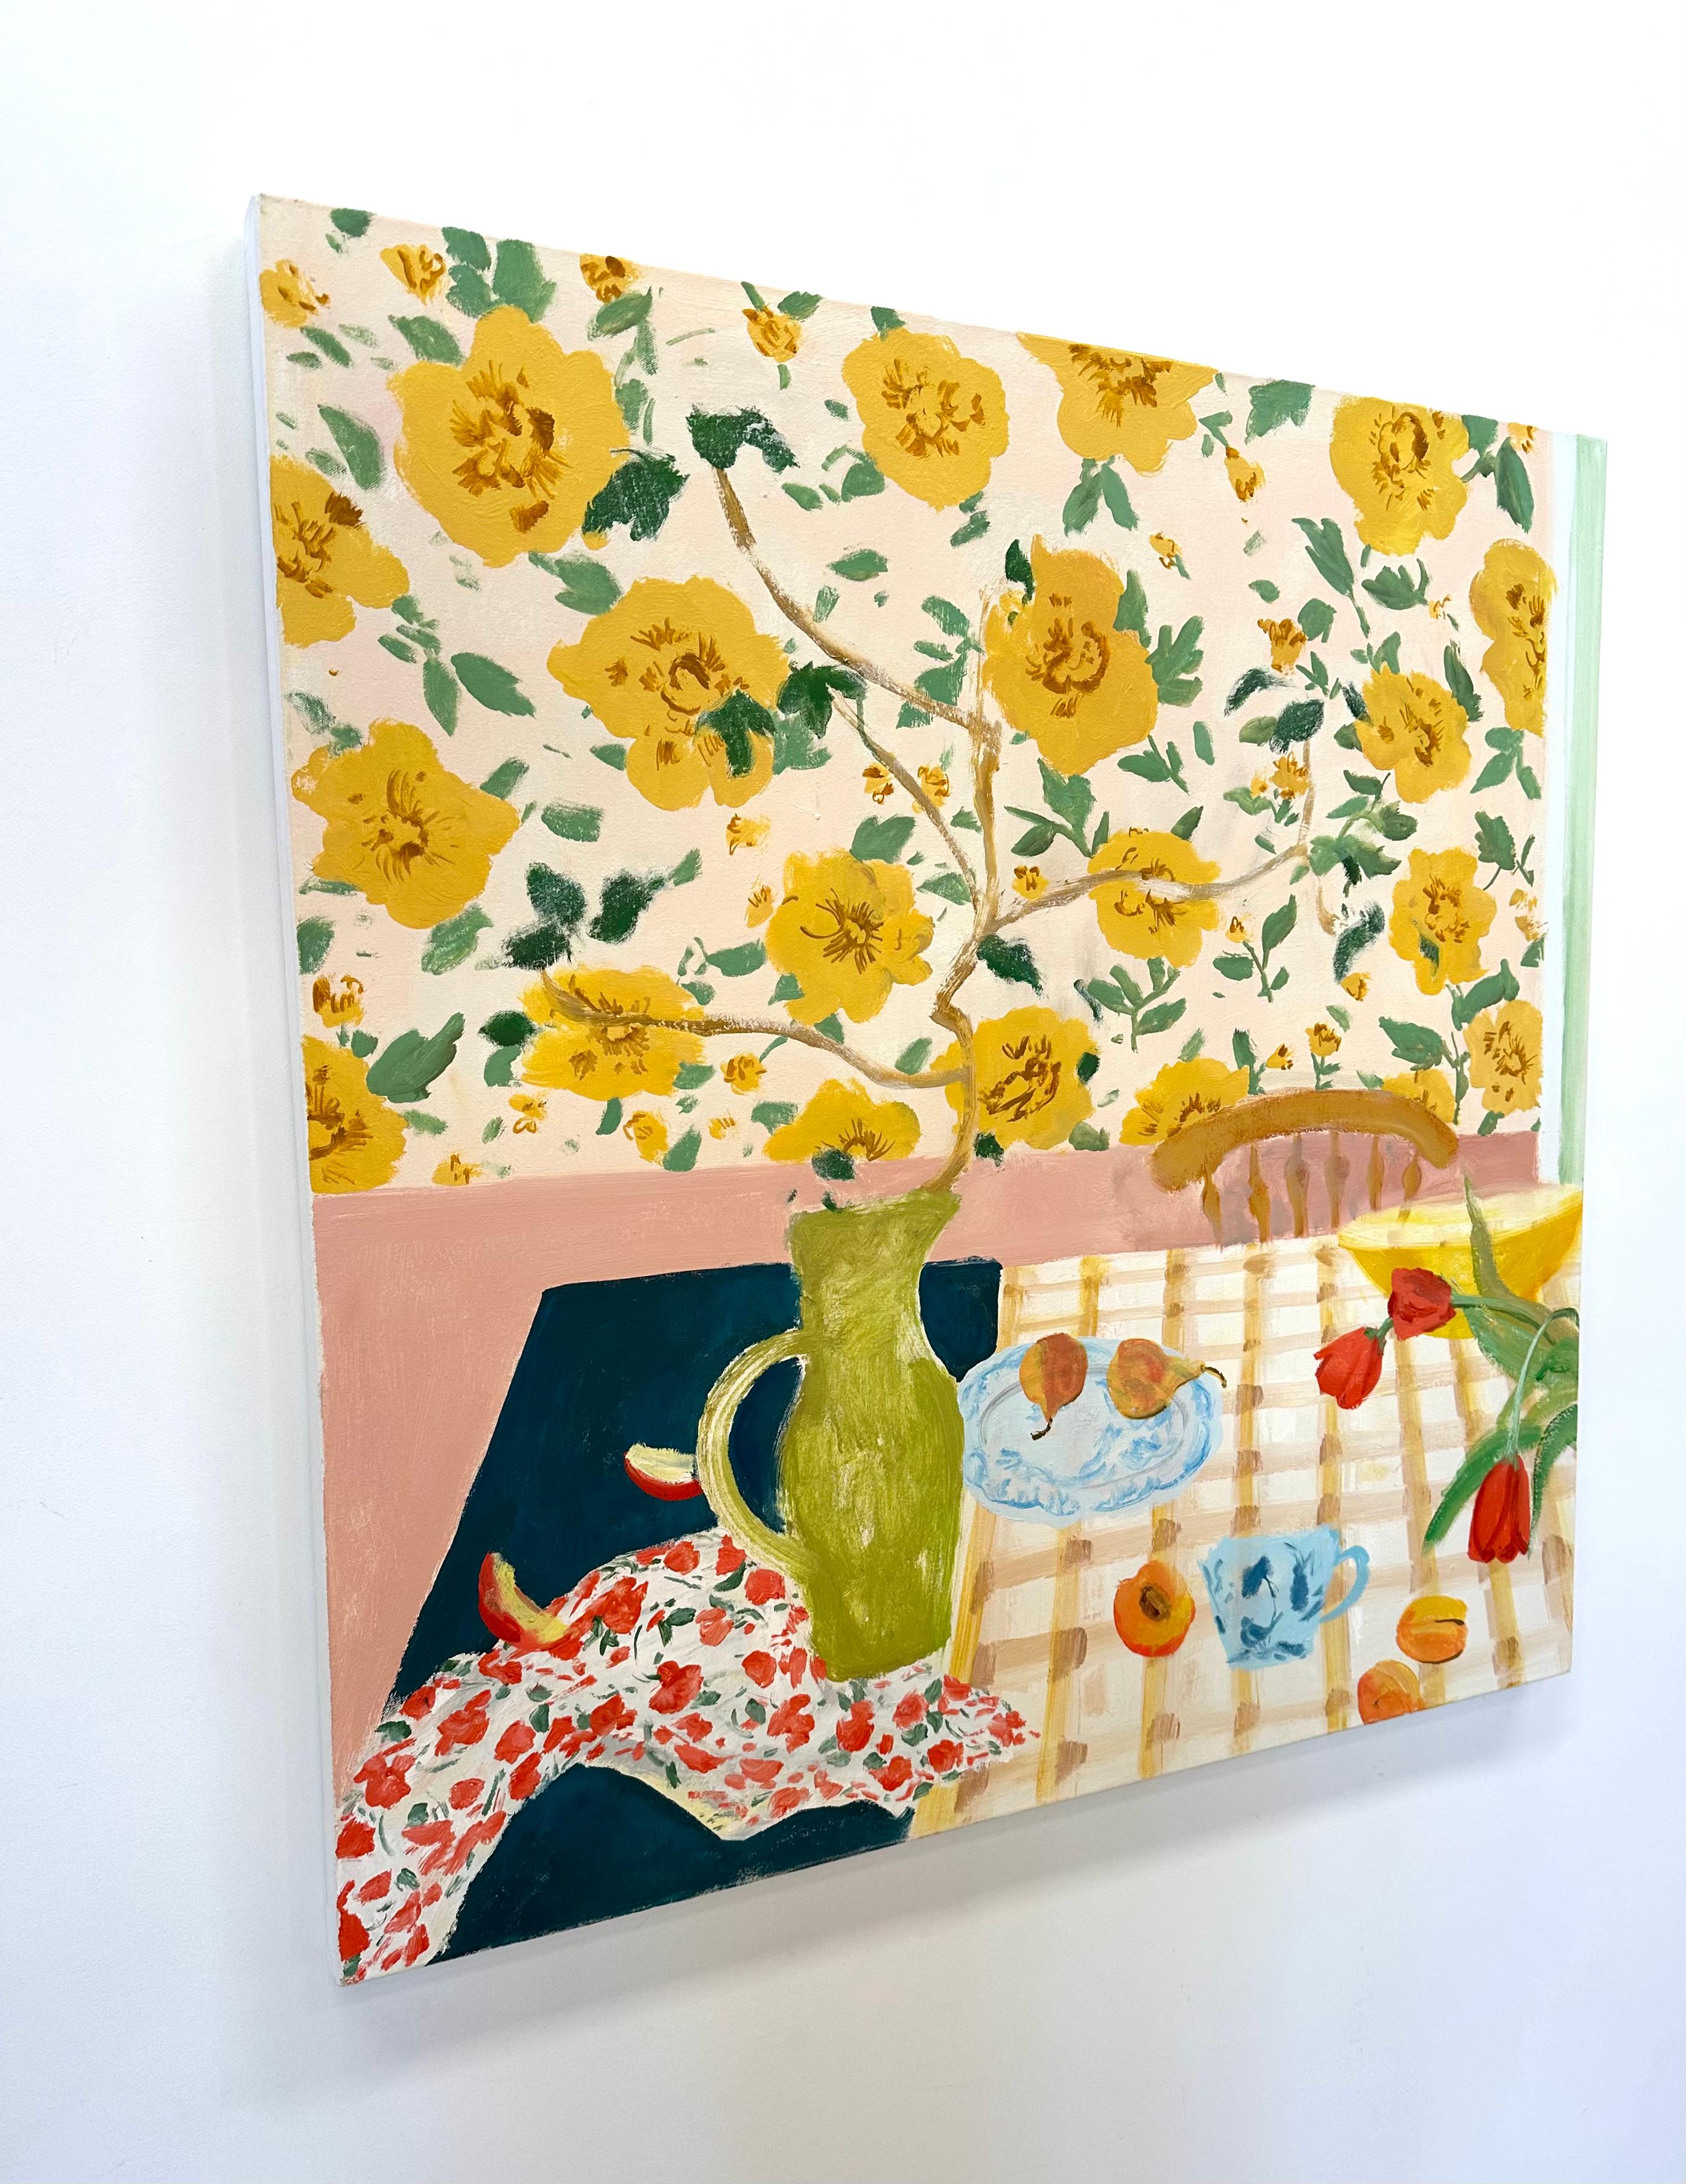 Poires et tiges, fleurs jaunes, tulipes rouges, fruits, poires, salle à manger - Contemporain Painting par Melanie Parke